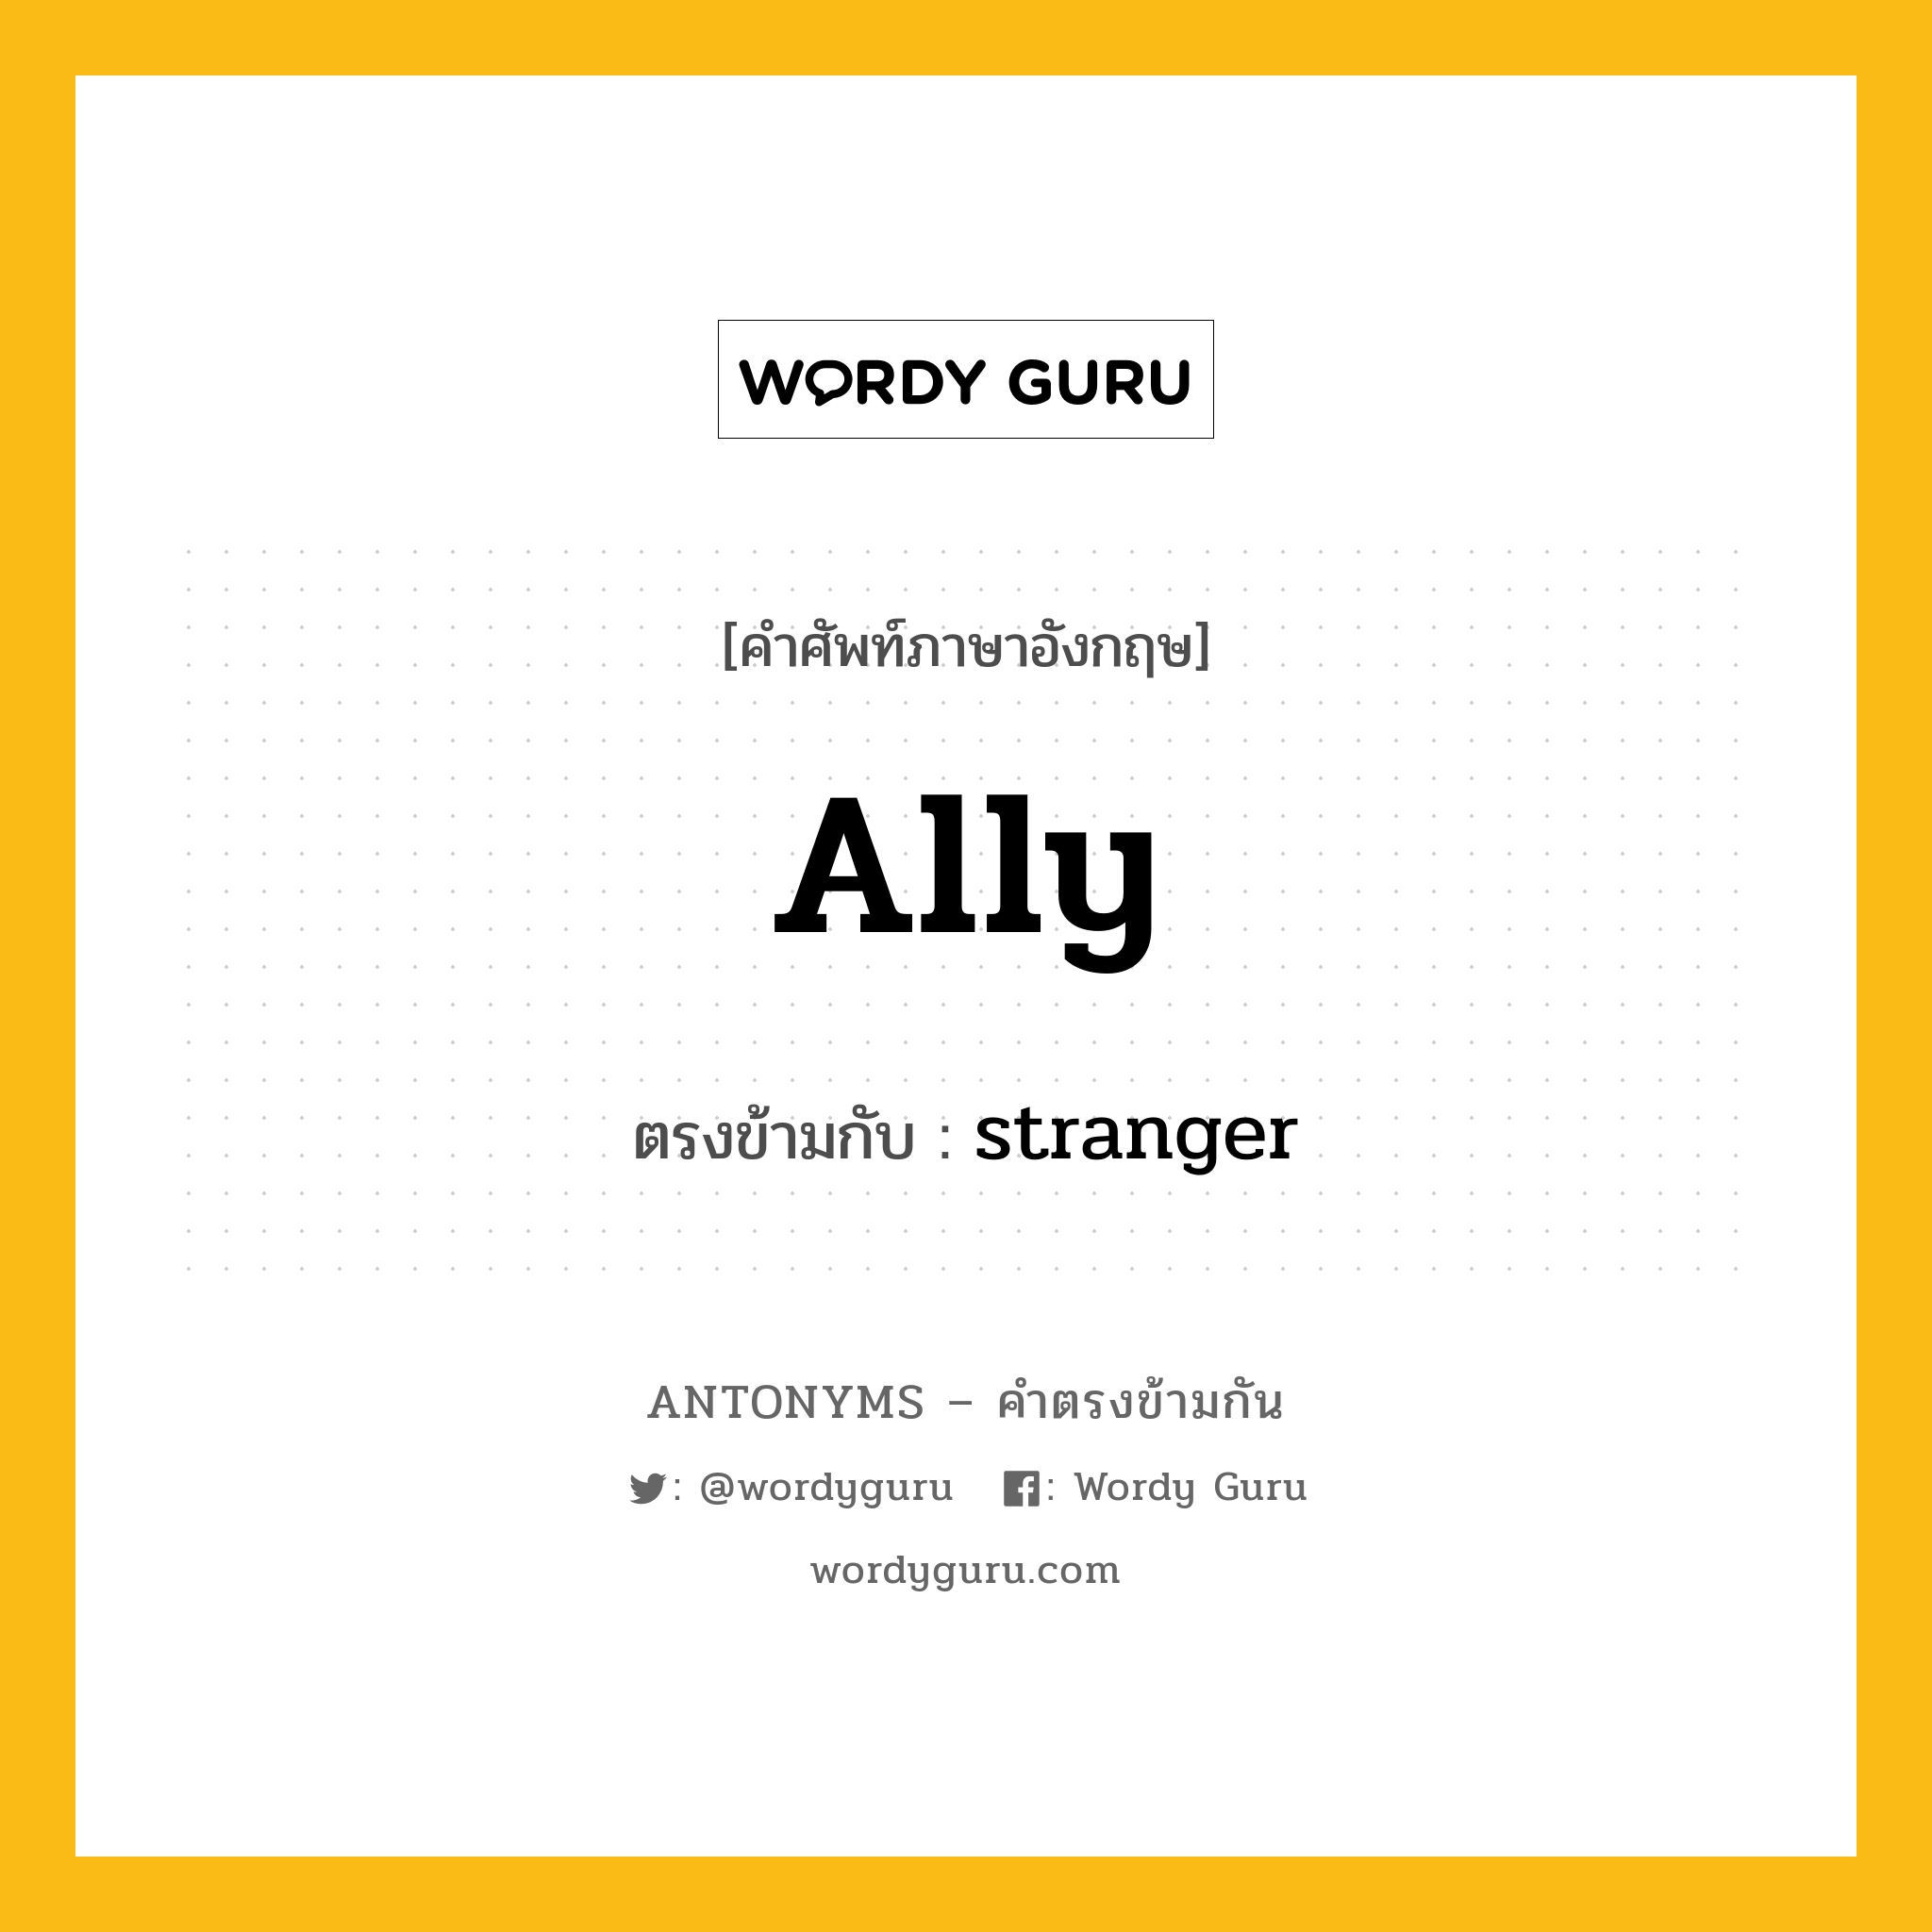 ally เป็นคำตรงข้ามกับคำไหนบ้าง?, คำศัพท์ภาษาอังกฤษ ally ตรงข้ามกับ stranger หมวด stranger